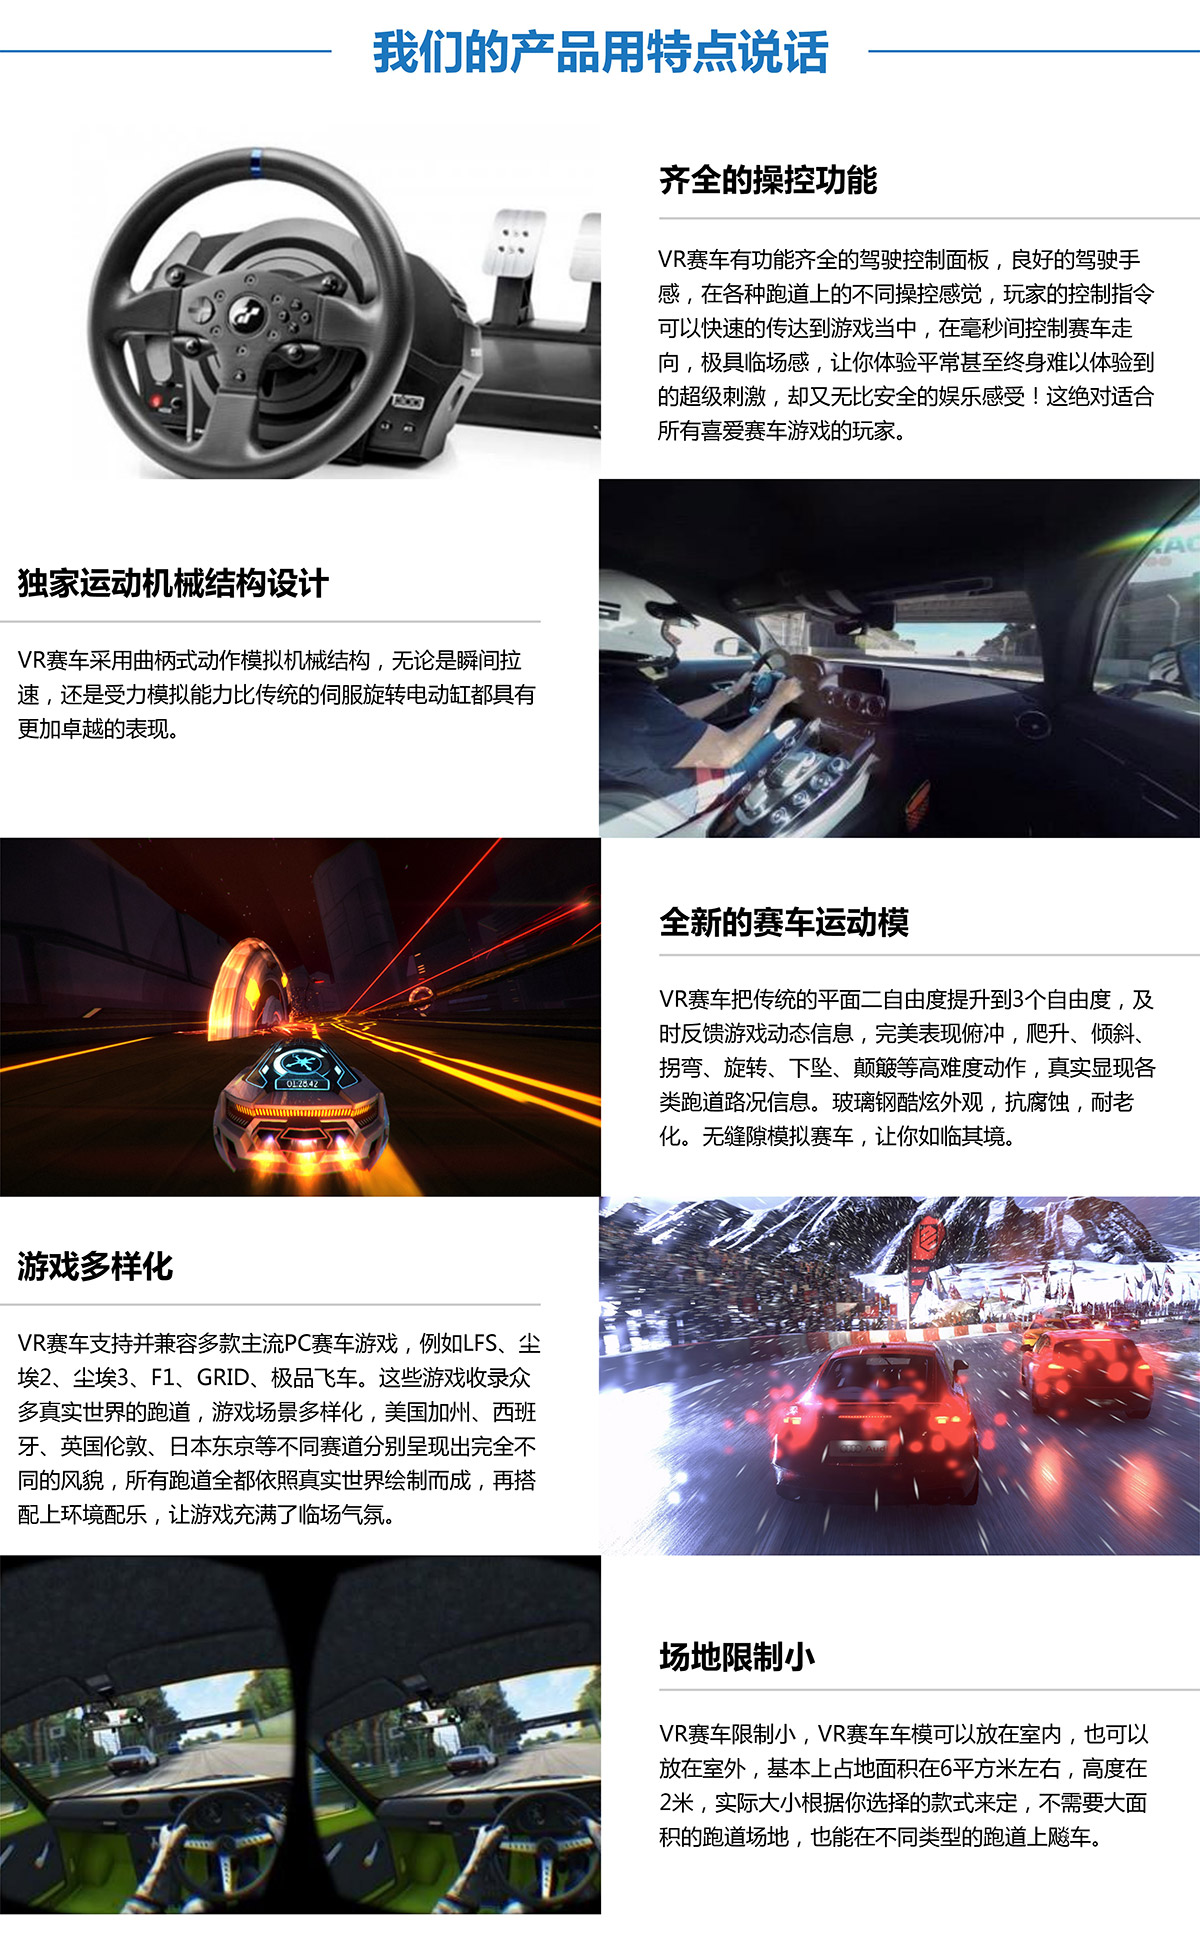 云南卓信智诚虚拟VR赛车产品用特点说话.jpg